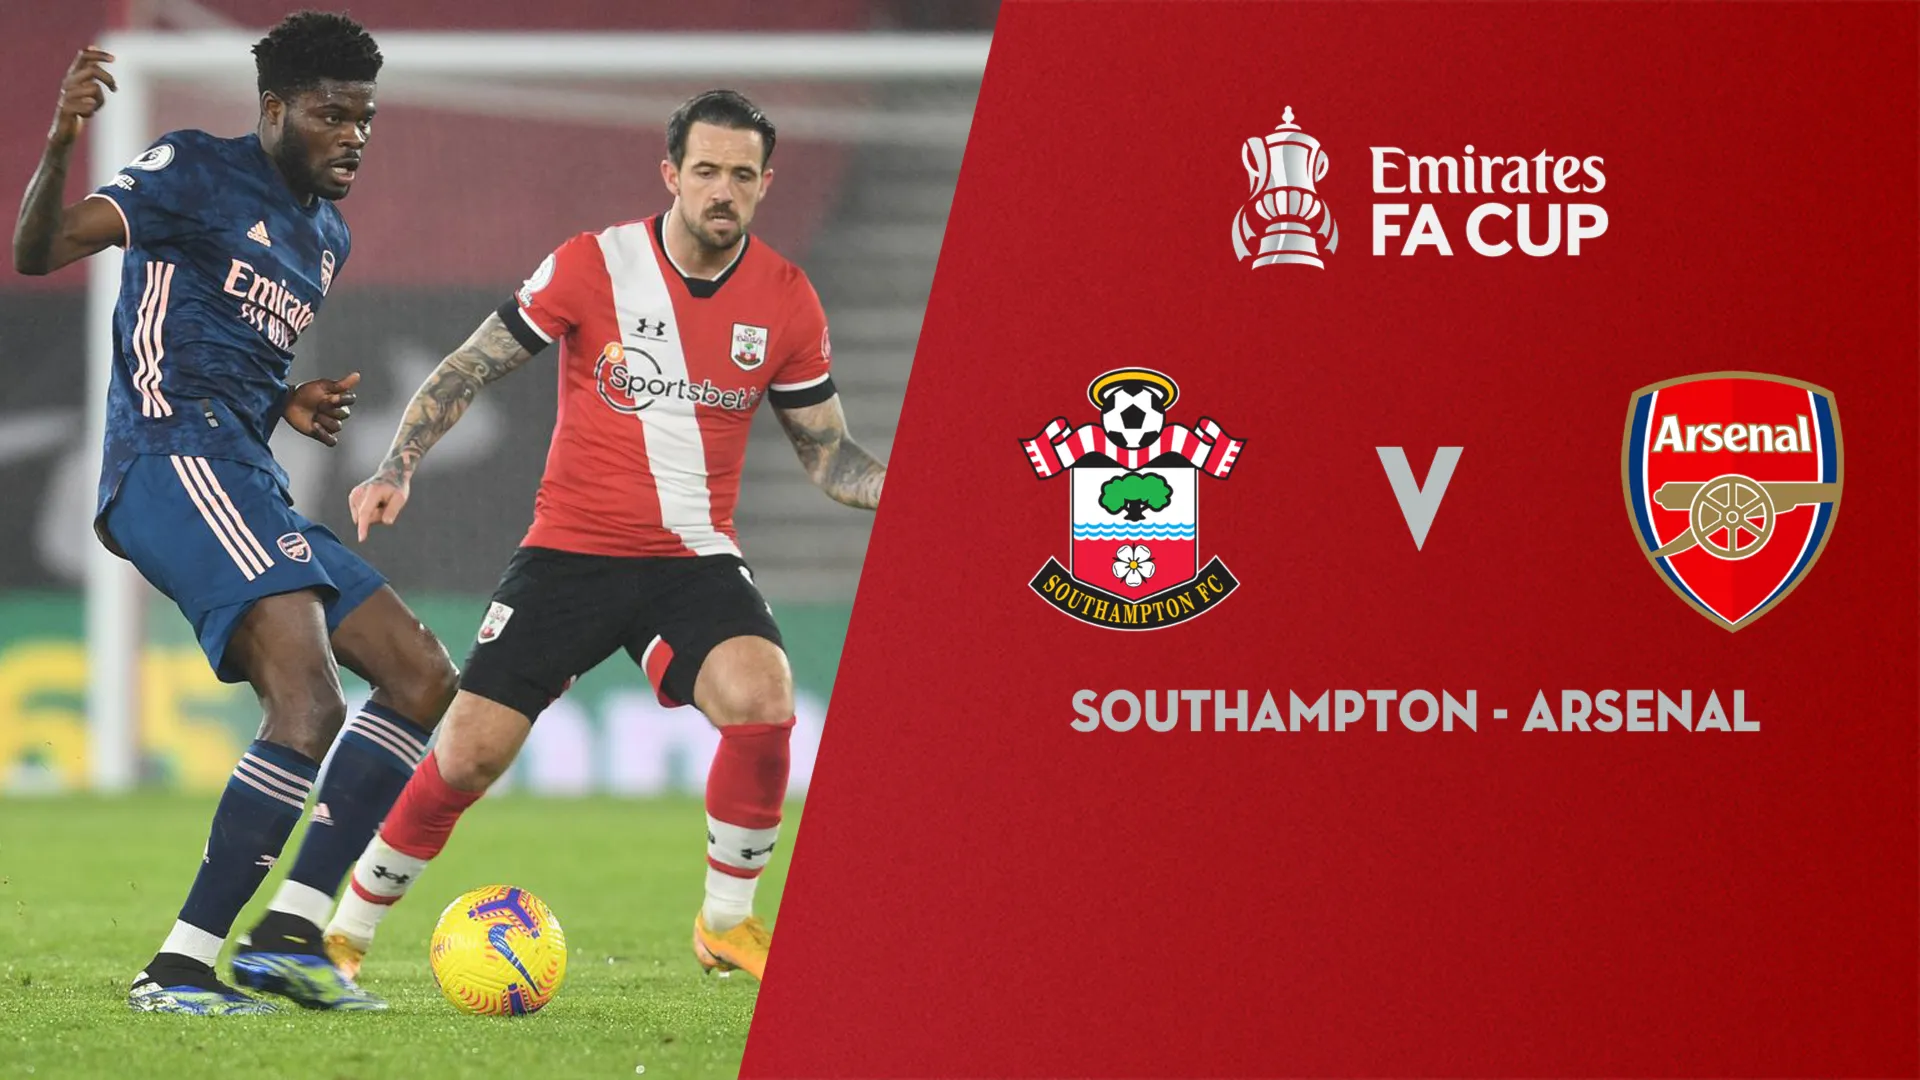 Xem lại Southampton vs Arsenal (Vòng 4 FA Cup 2020/21)